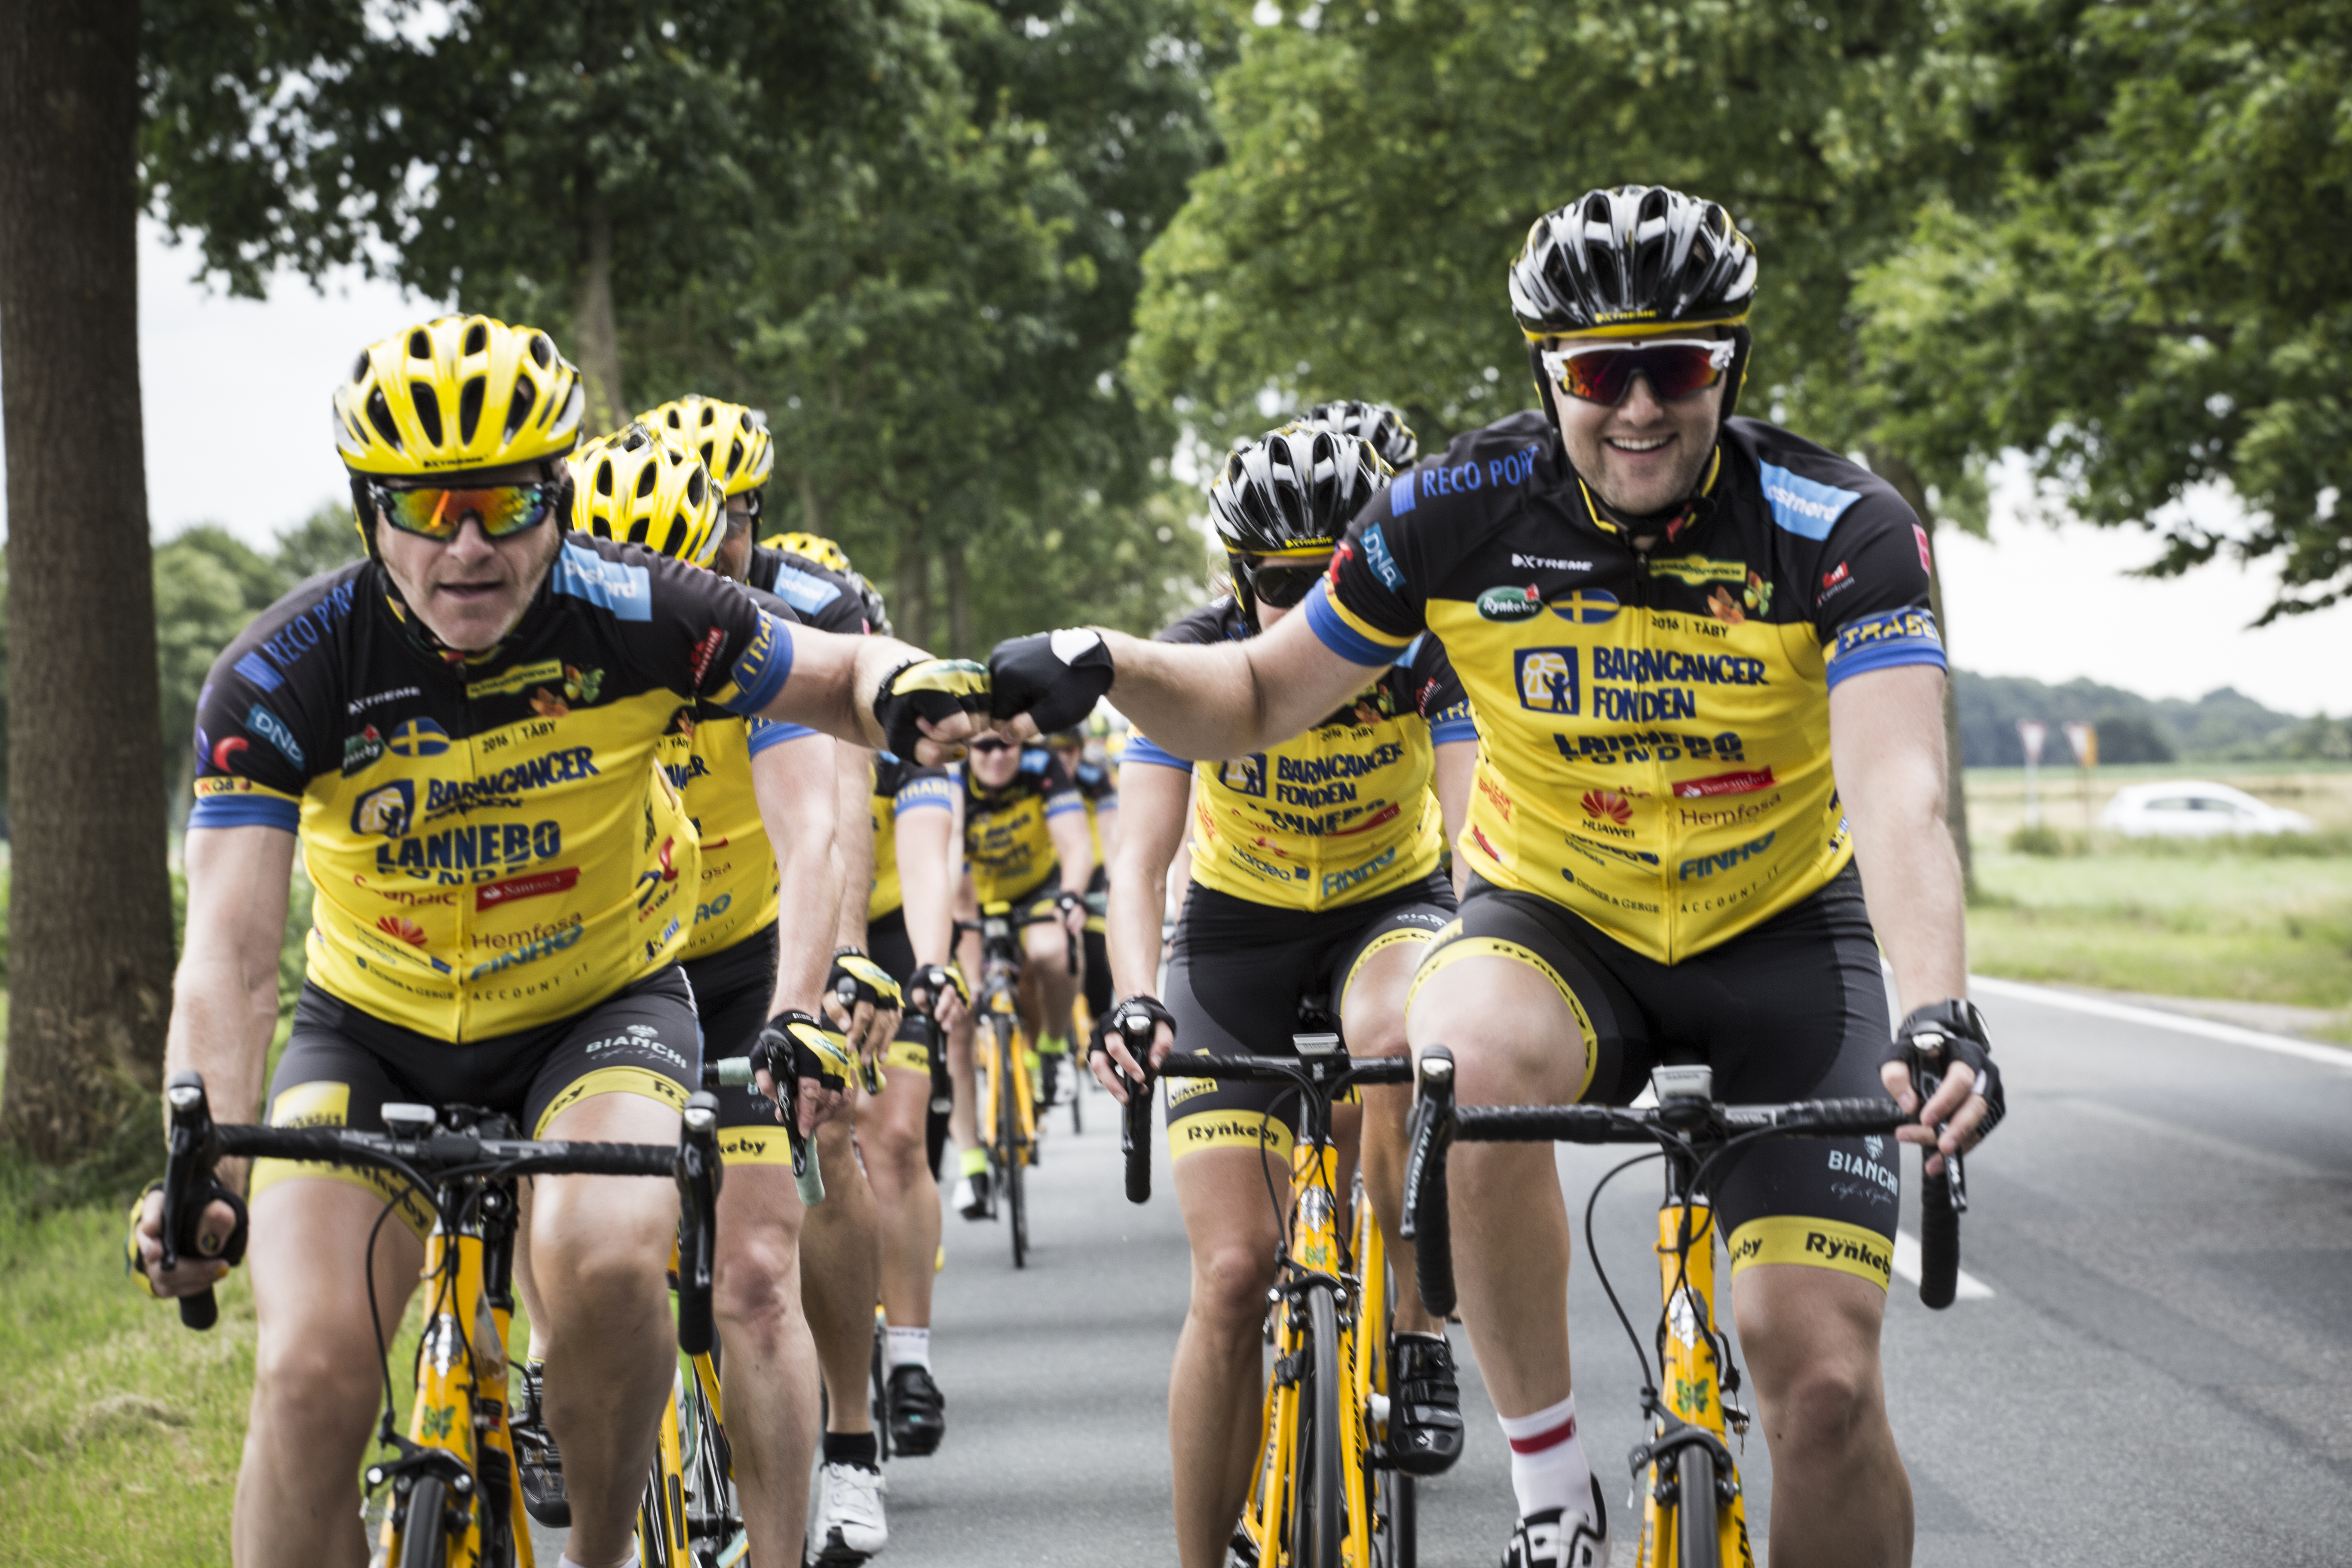 Det blir ingen cykling till Paris i år. Men insamlingen fortsätter ändå. Foto: Team Rynkeby